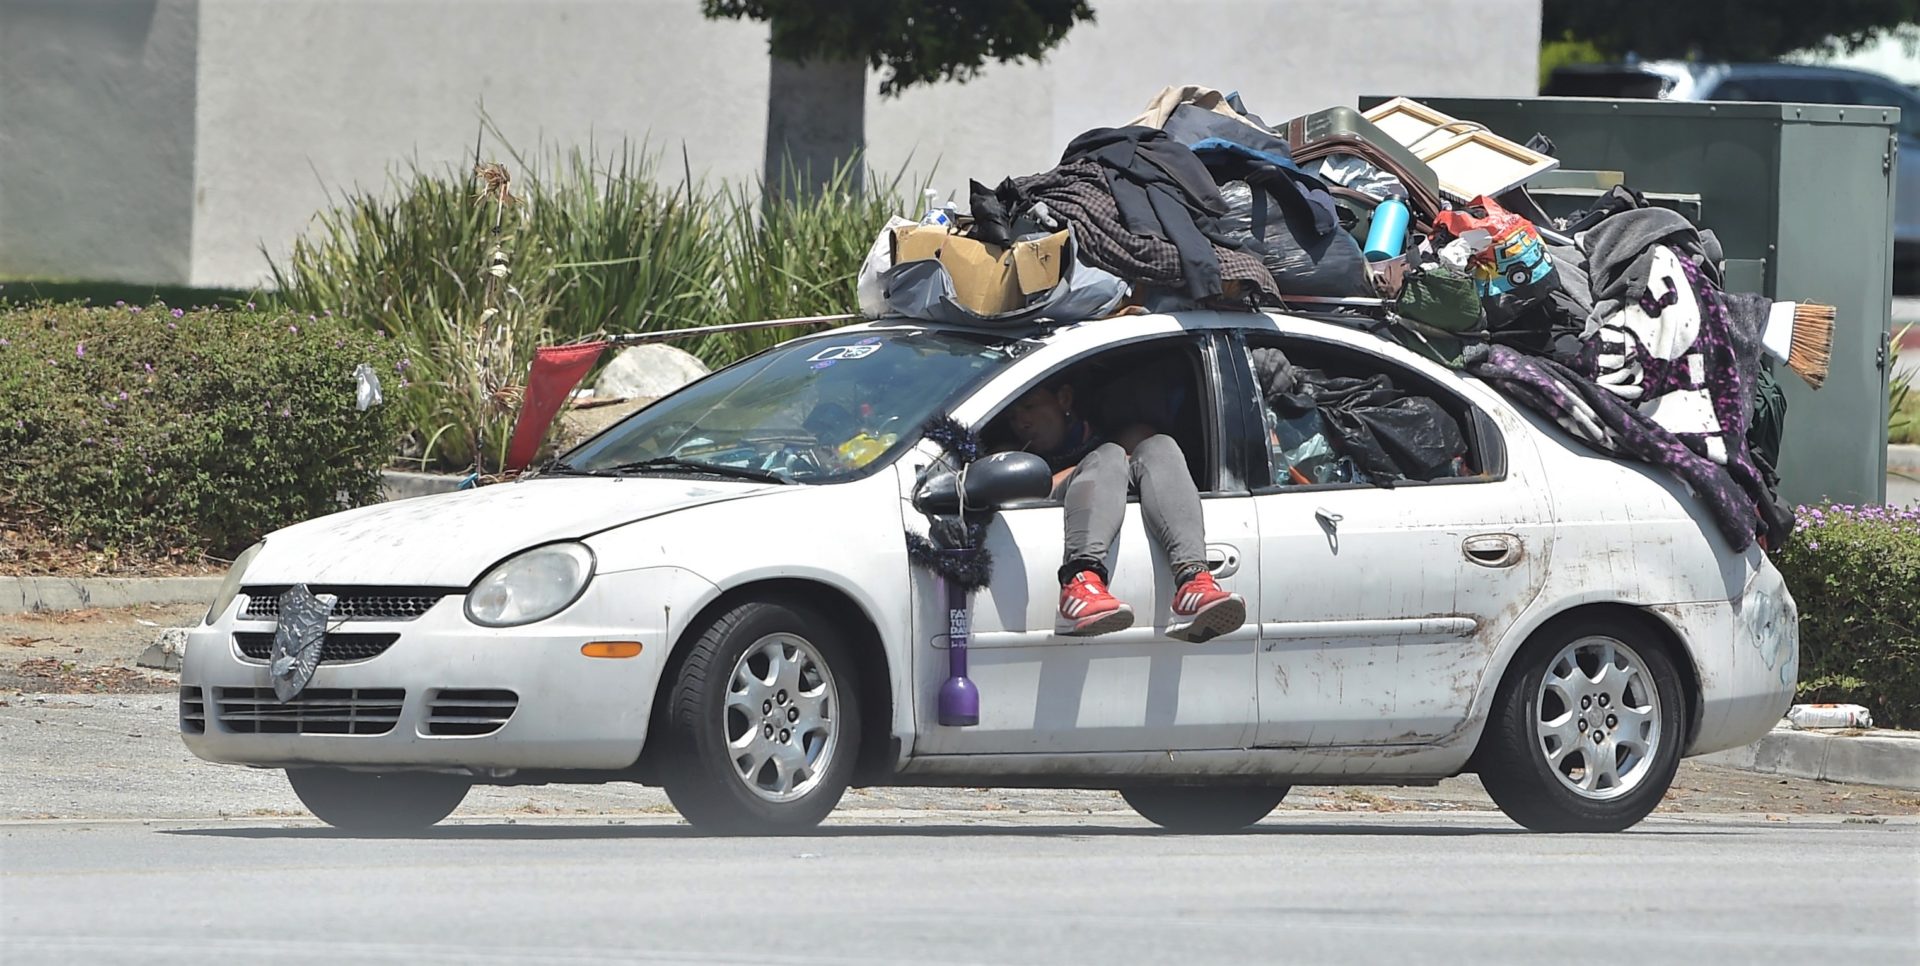 Monrovia homeless vehicle